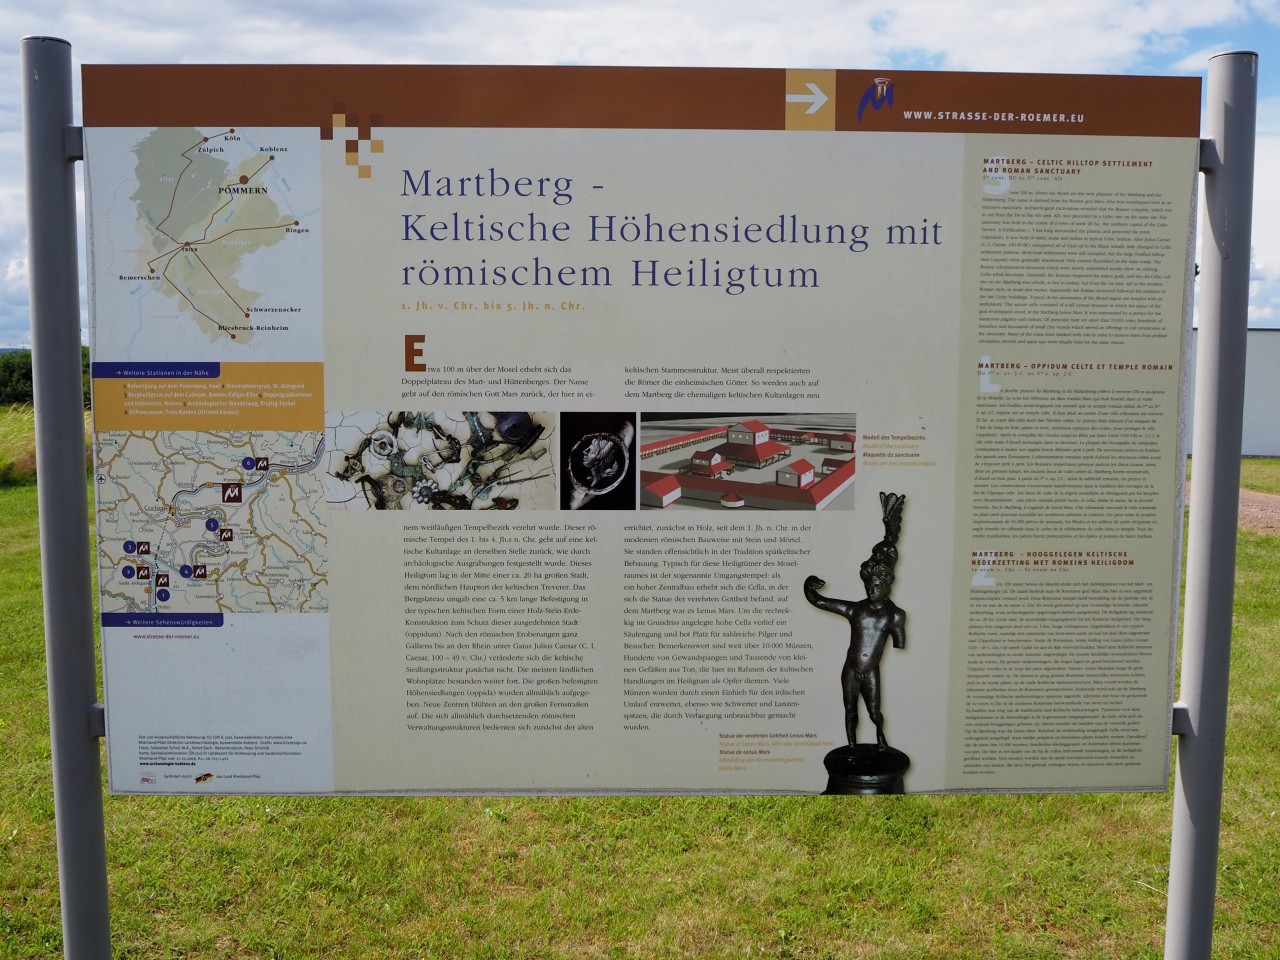 Ursprünglich war der Martberg eine keltische Höhensiedlung (Oppidum).